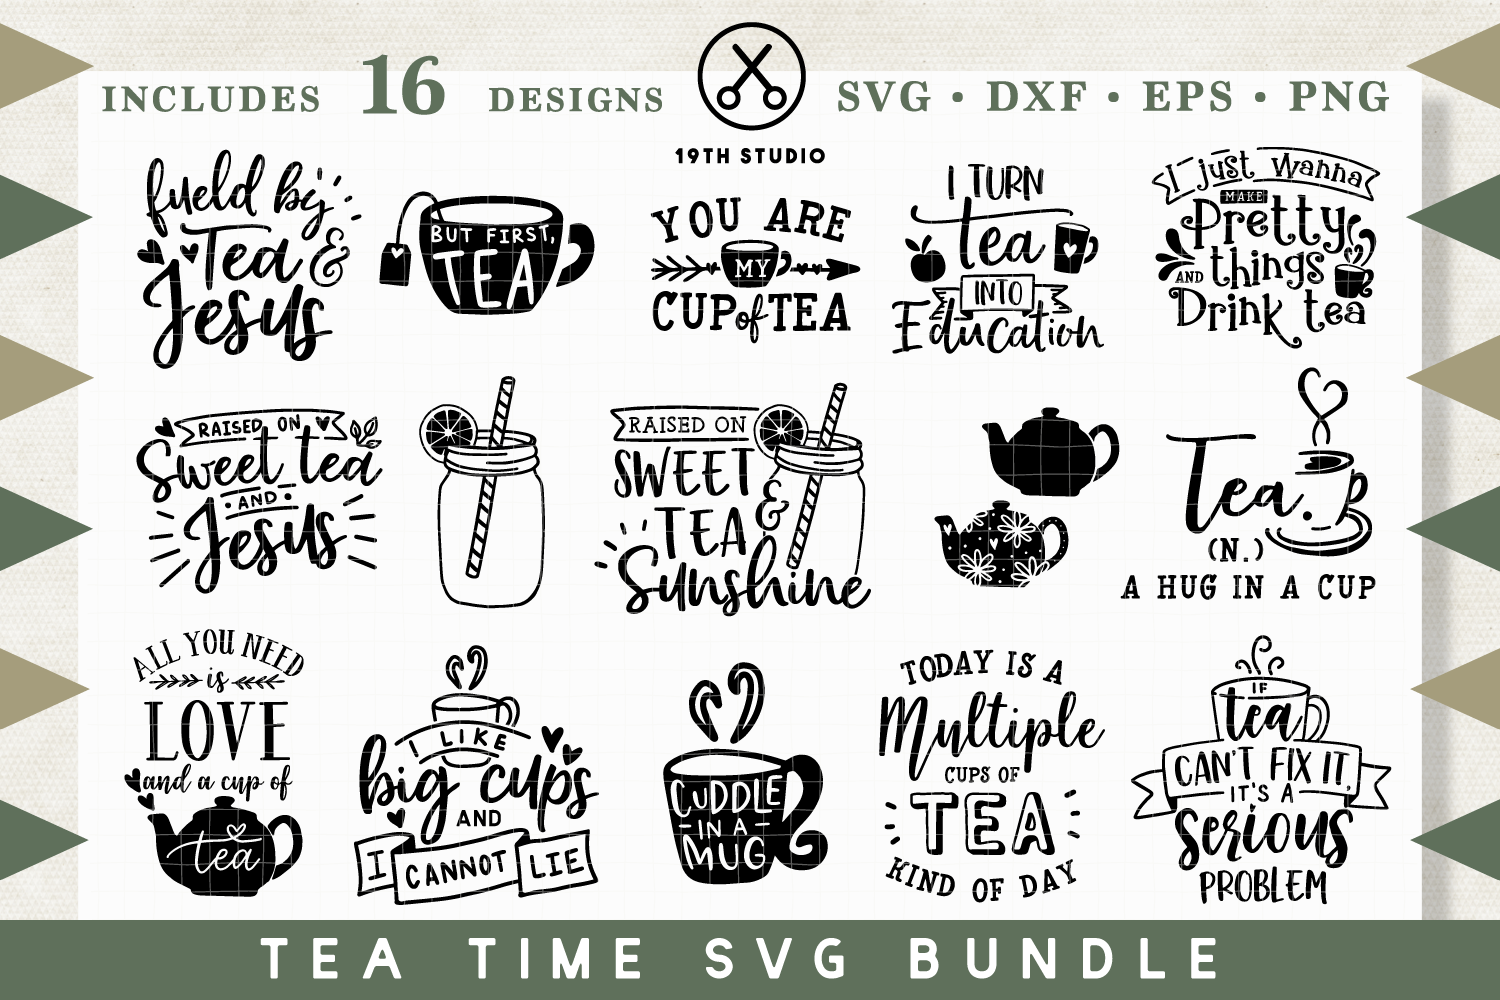 Tea time SVG Bundle - MB30 (126819) | SVGs | Design Bundles